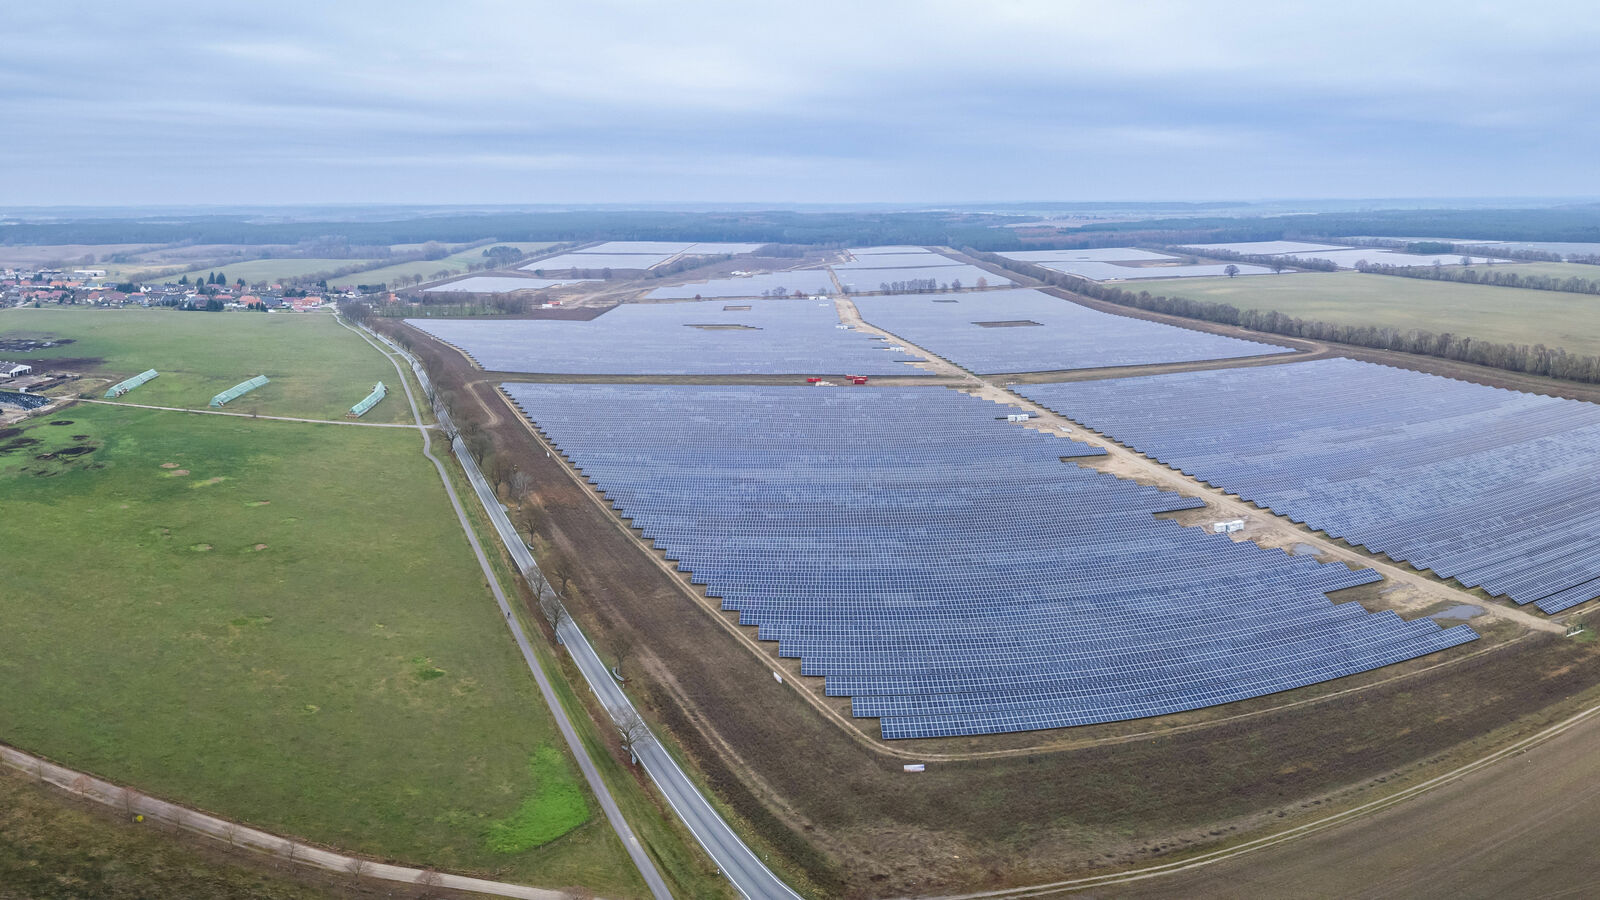 Riesensolarpark in Mecklenburg: Hier liefert die Sonne bald sauberen Strom für E-Autos